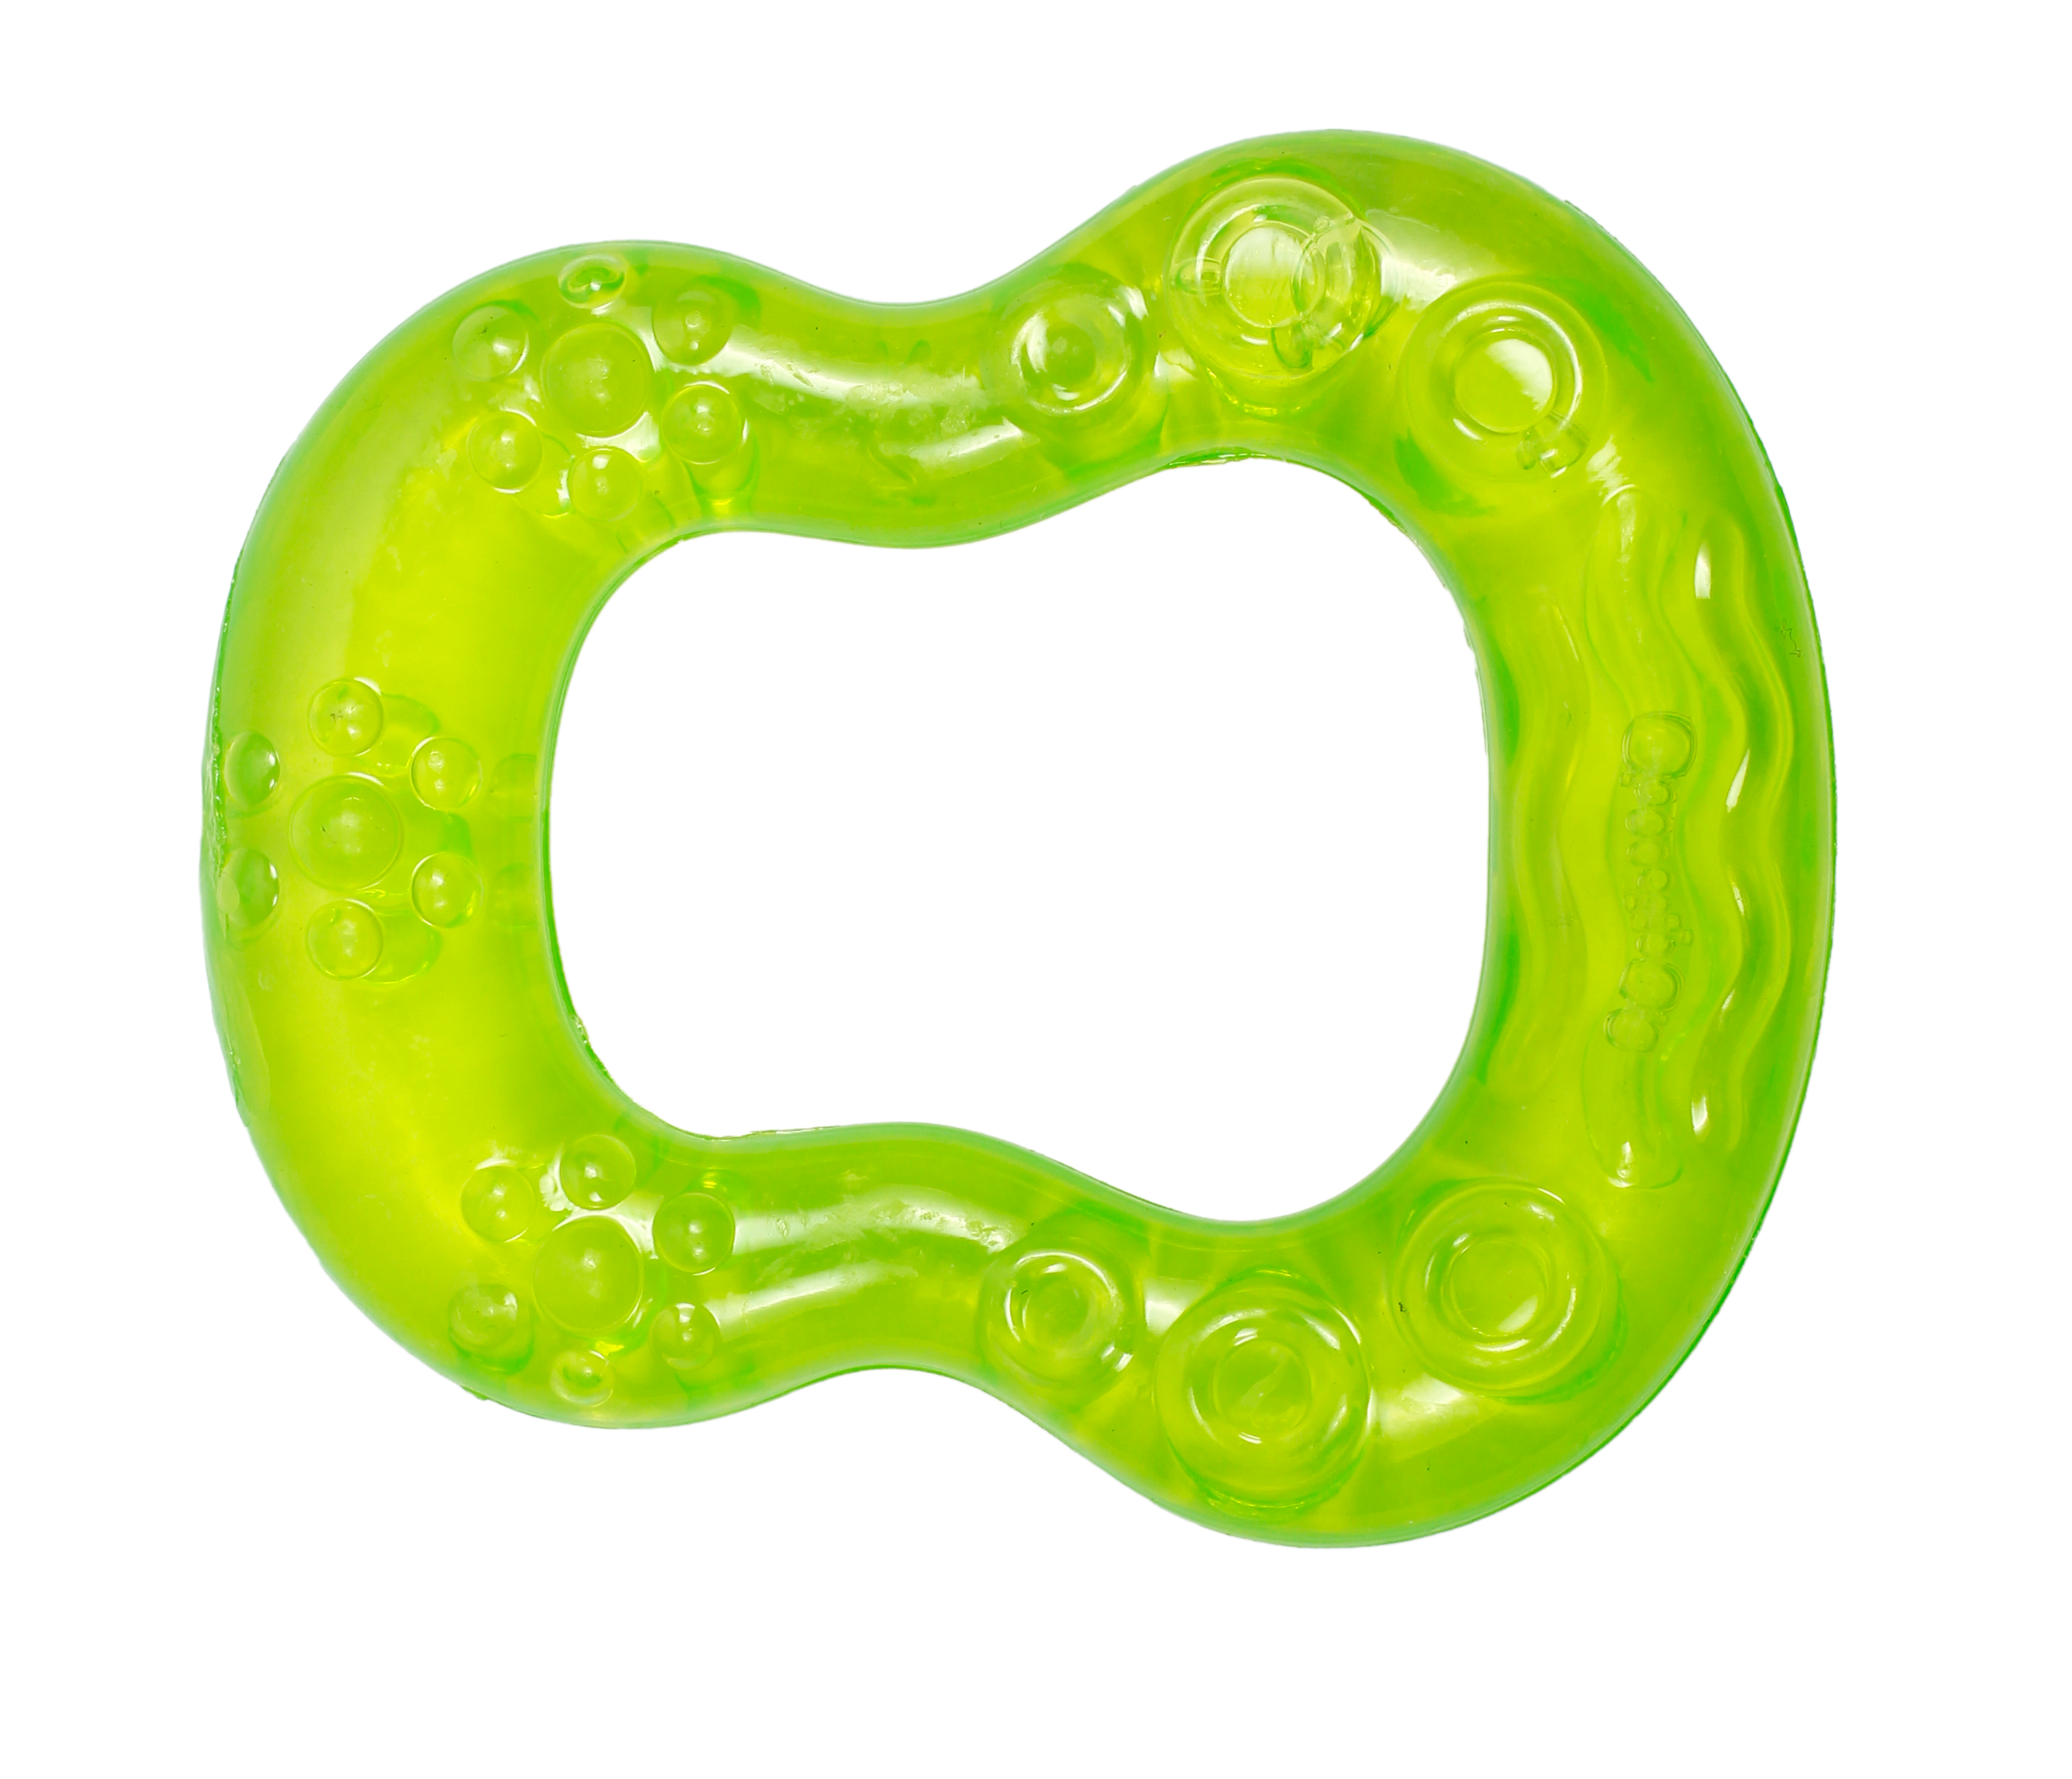 Прорезыватель для зубов Lindo, с водой, зеленый (LI 304 зел) - фото 1